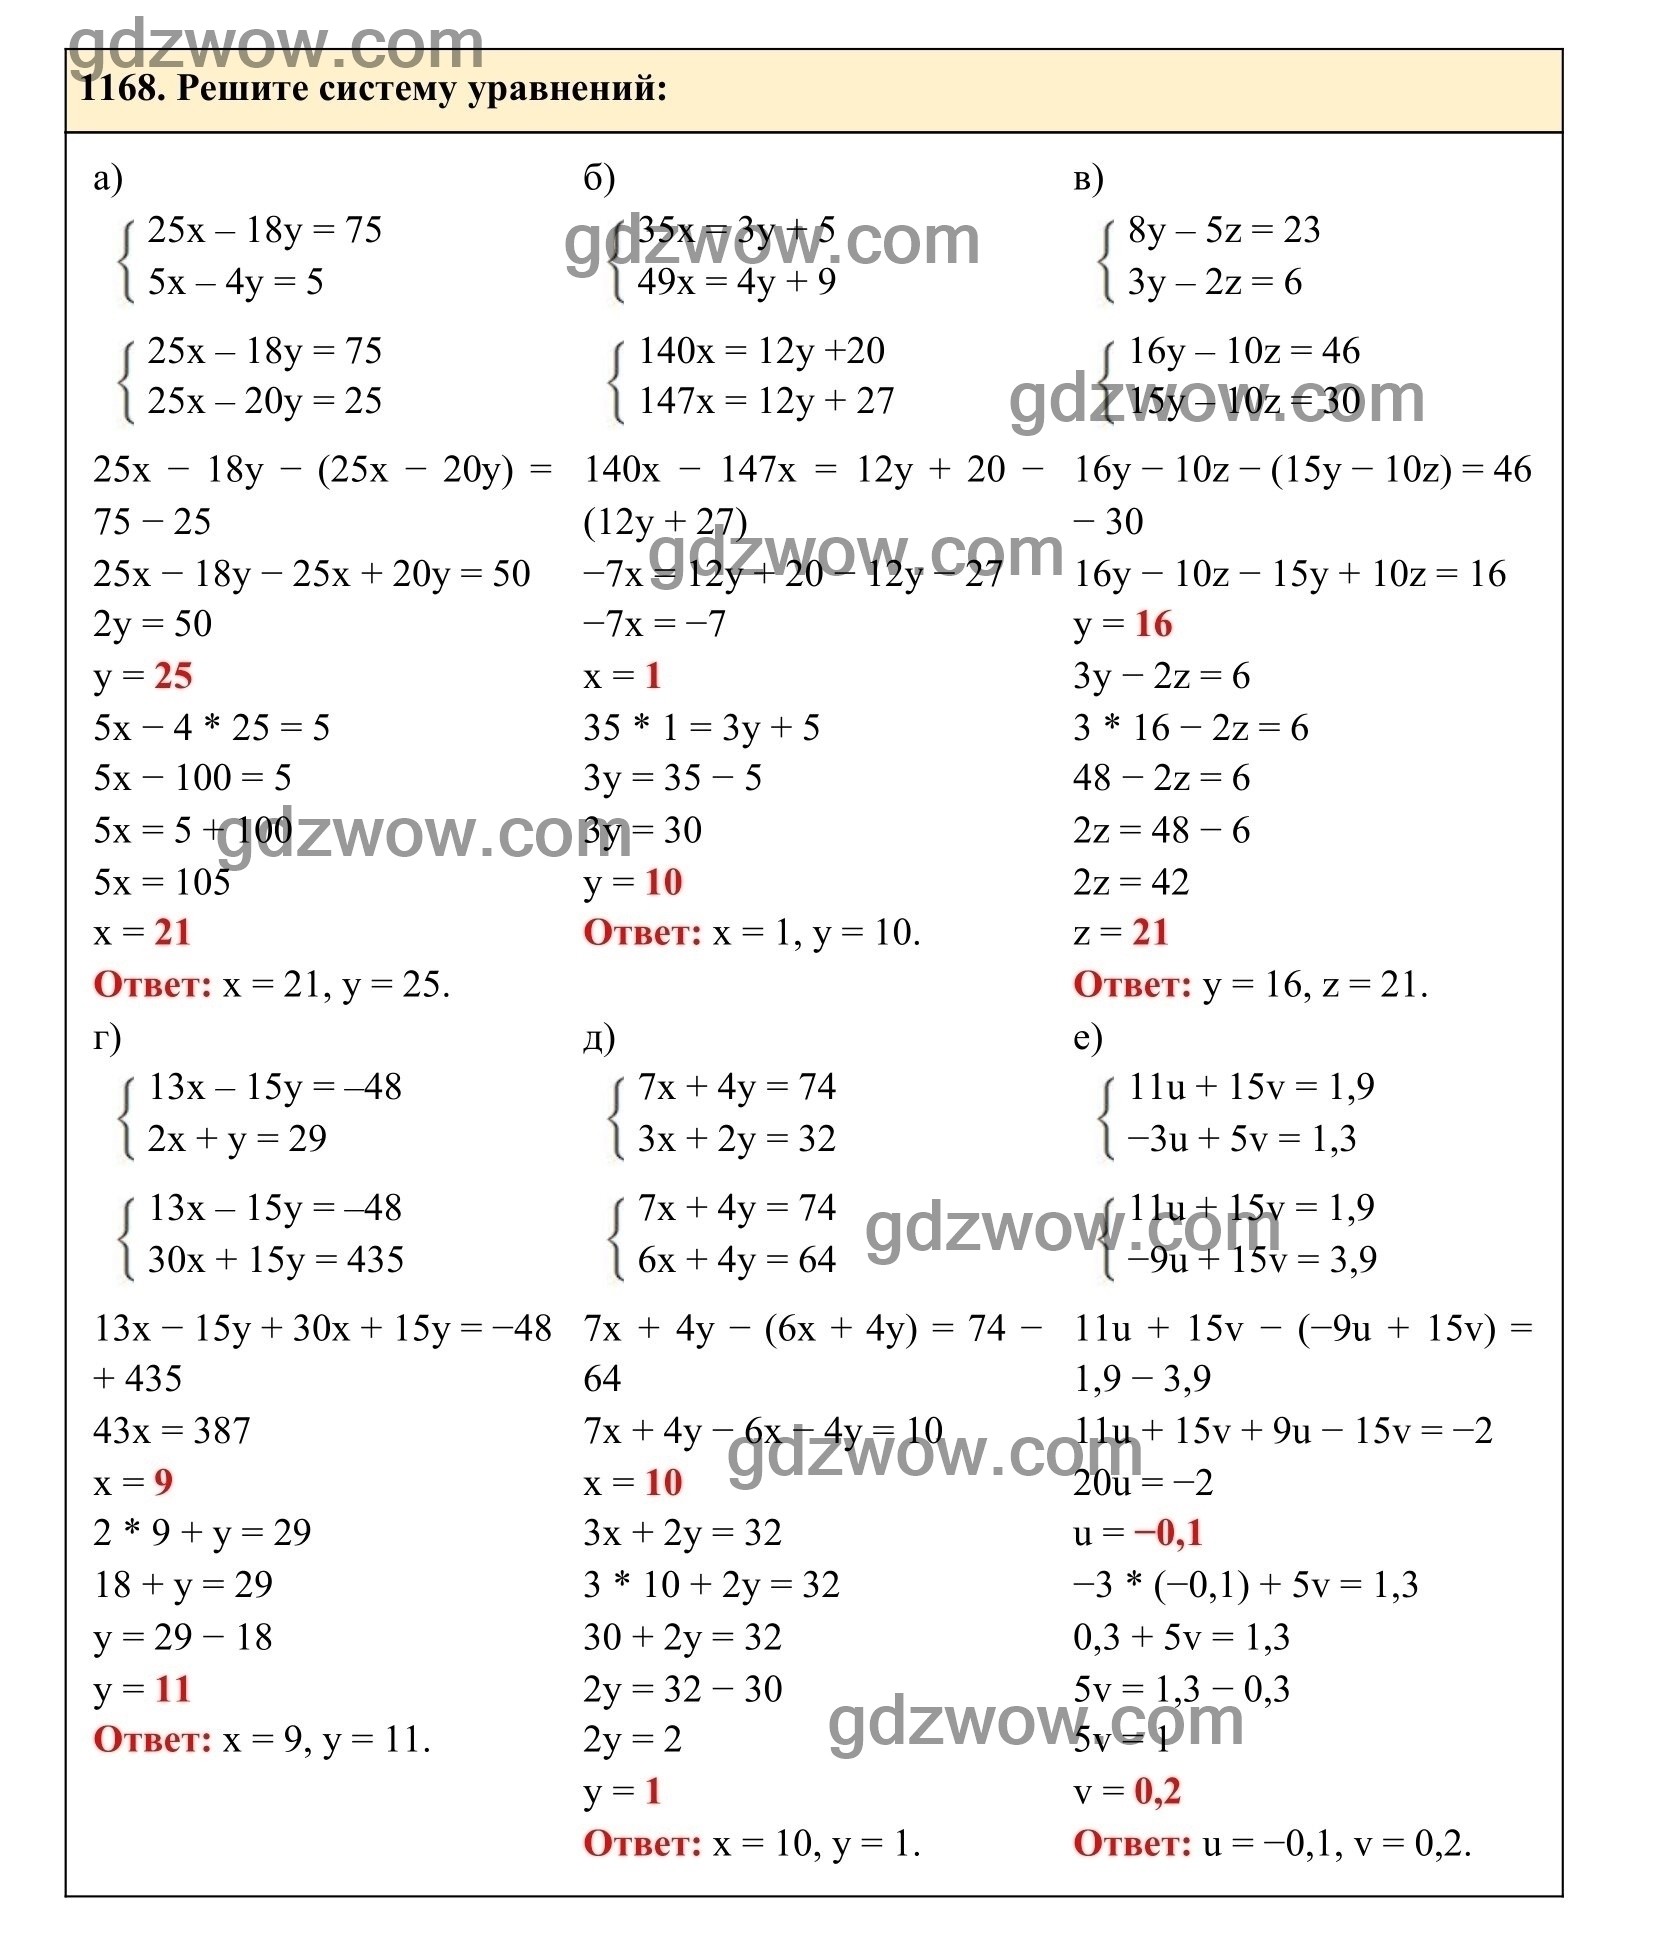 Упражнение 1168 - ГДЗ по Алгебре 7 класс Учебник Макарычев (решебник) - GDZwow